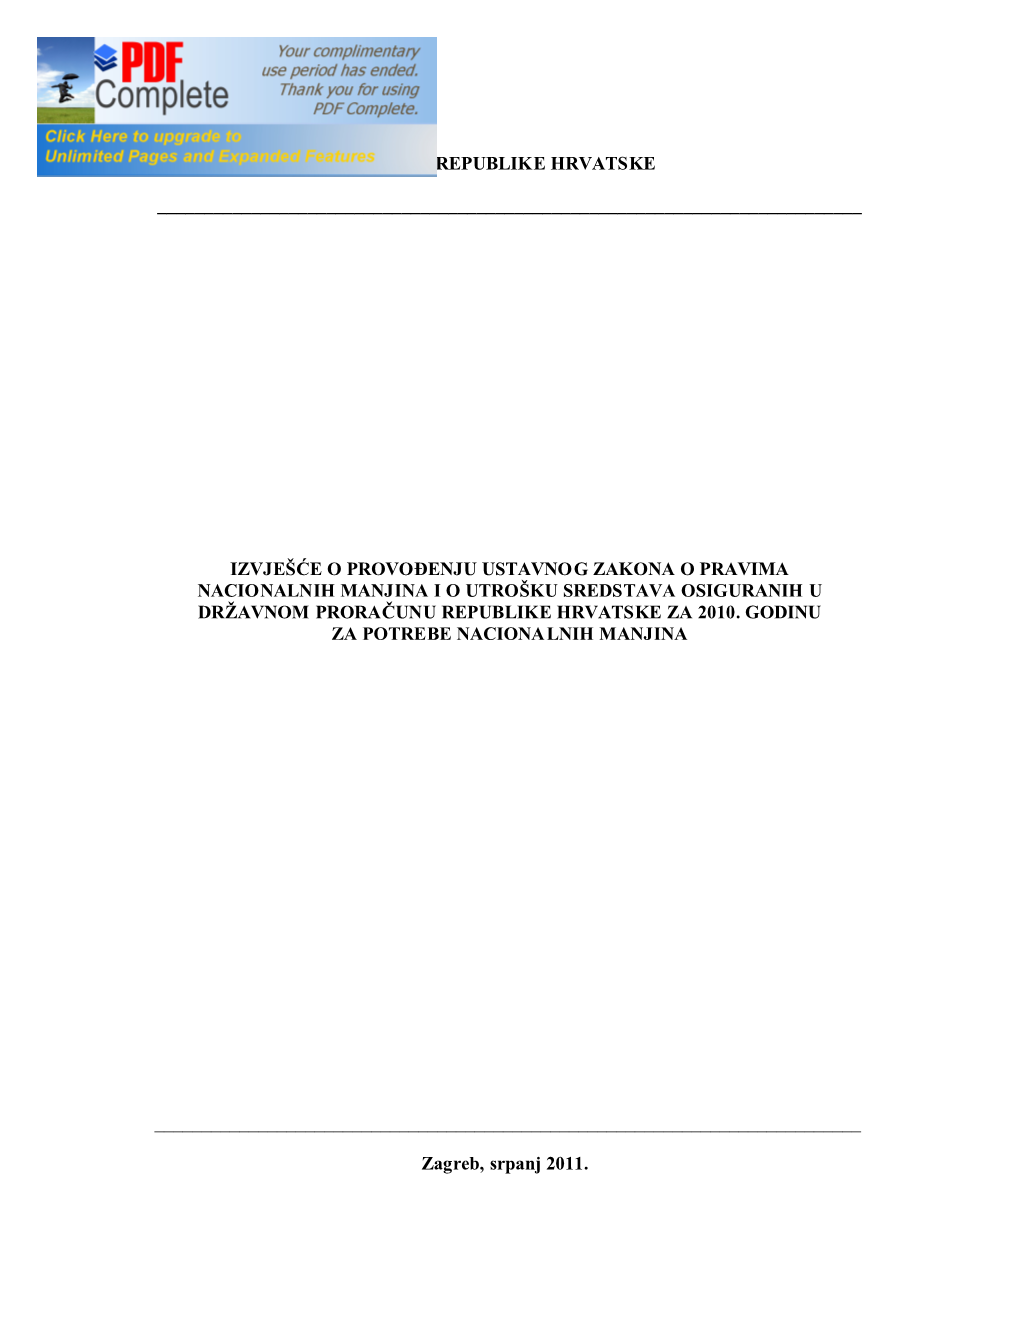 Izvješće O Provođenju Ustavnog Zakona O Pravima Nacionalnih Manjina I Utrošku Sredstava Osiguranih U Državnom Proračunu RH Za 2010